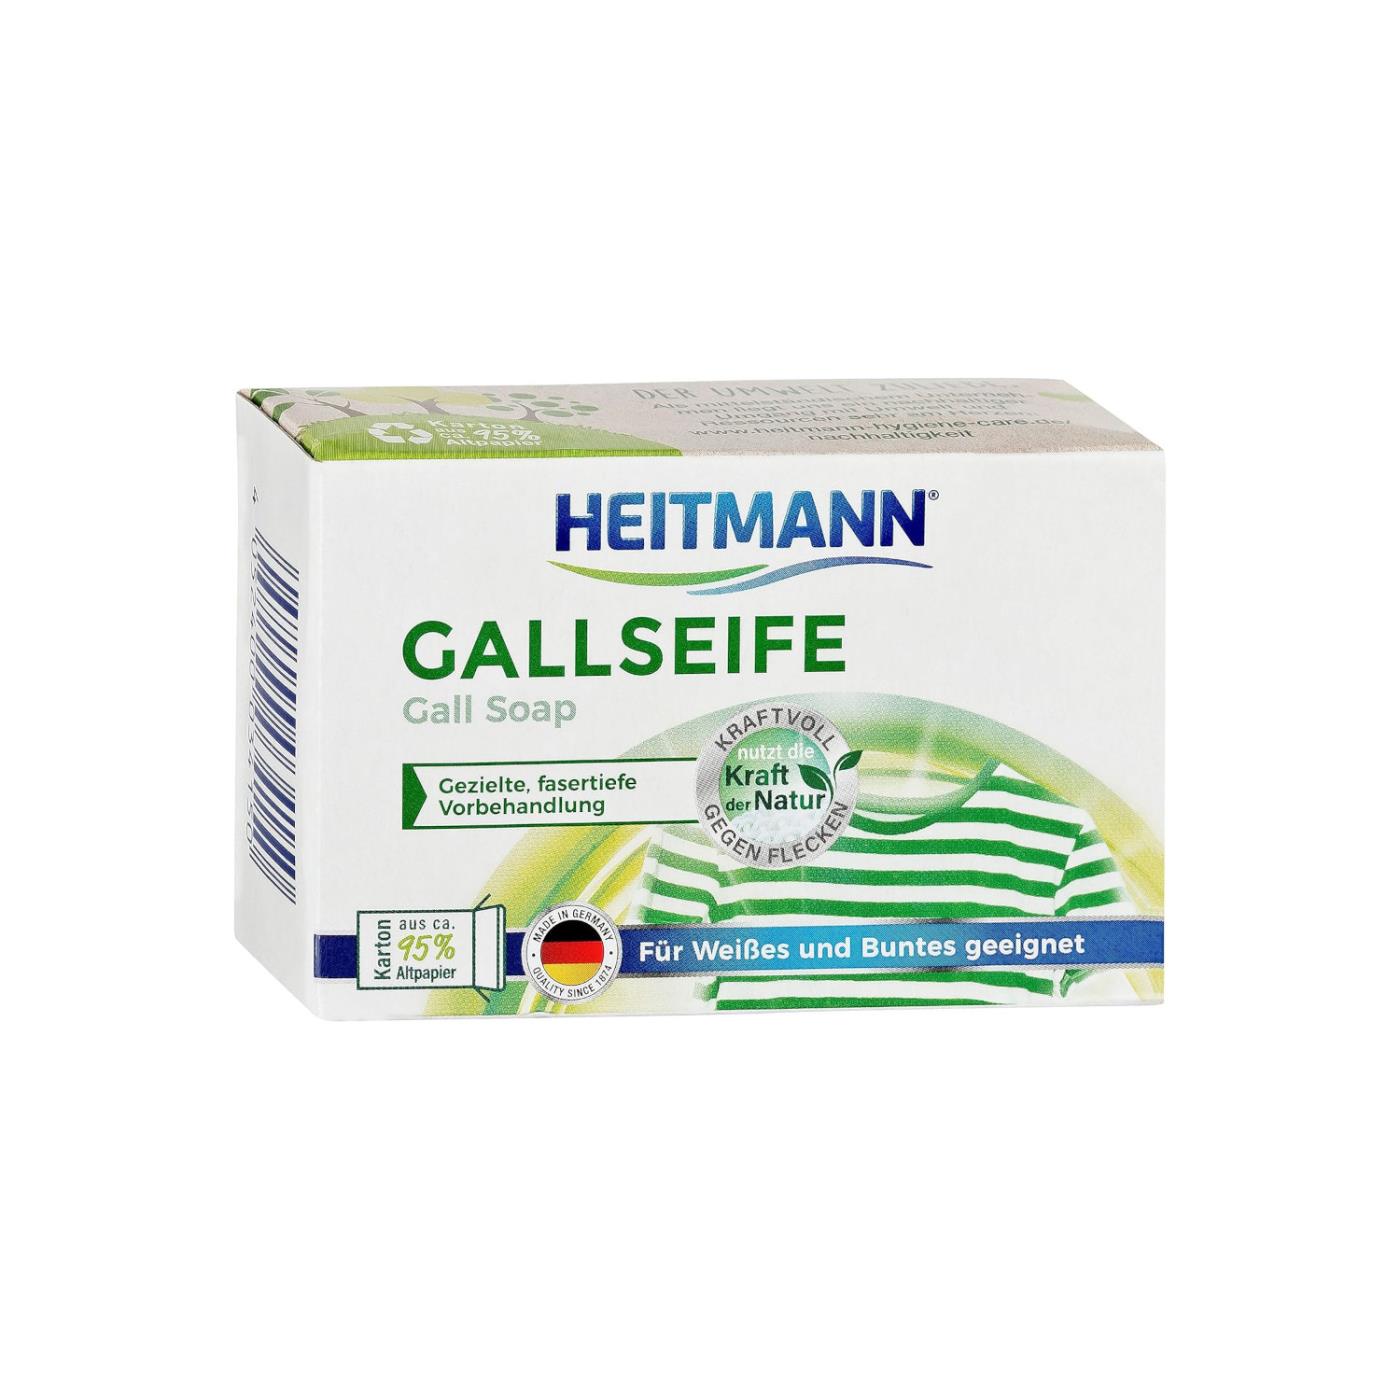 Heitmann Gallseife 100g Stück 10er Pack